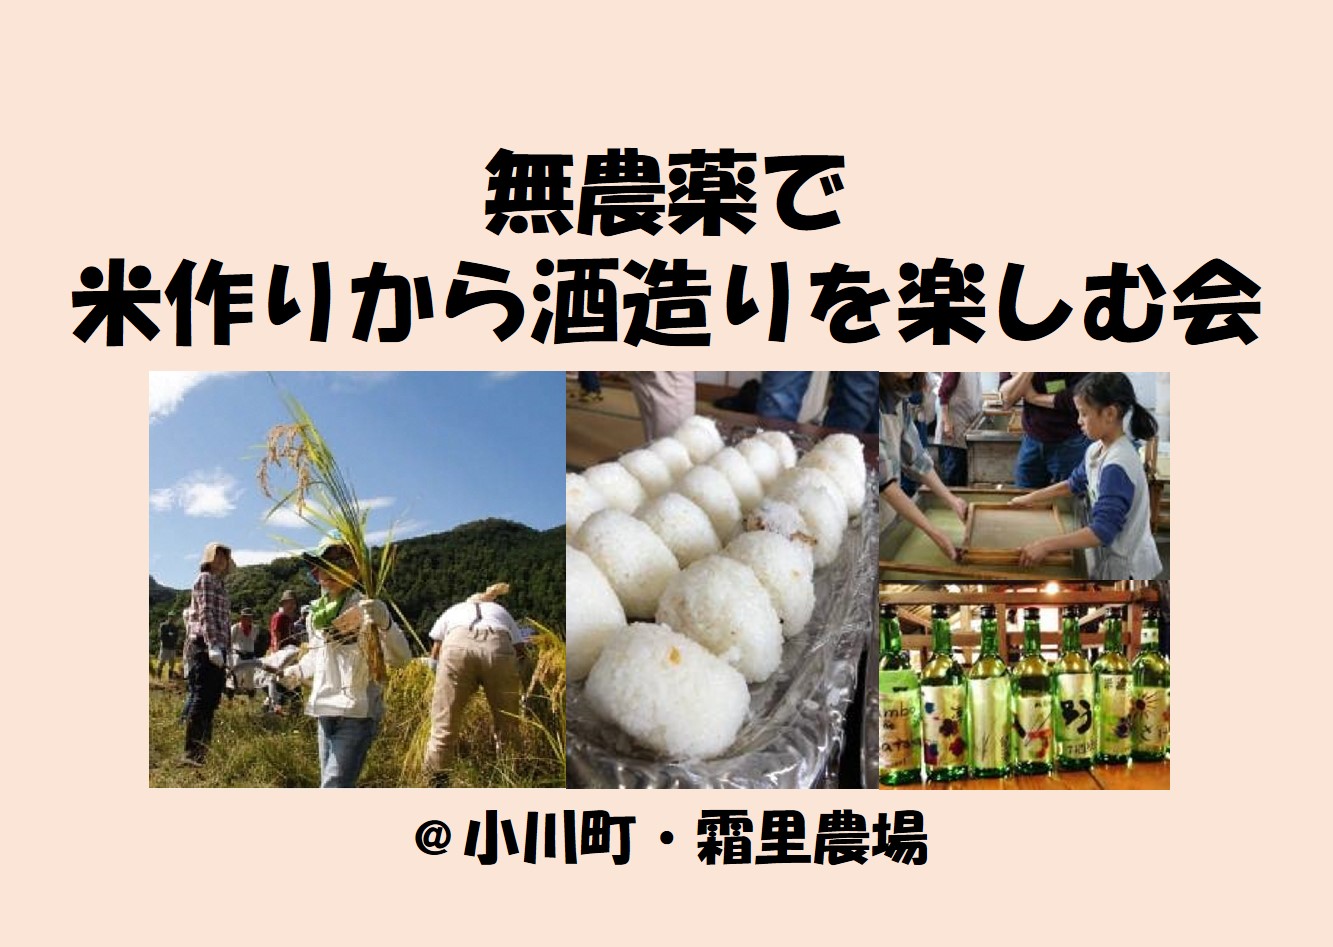 無農薬で米作りから酒造りを楽しむ会＠小川町 | 地域のトピックス